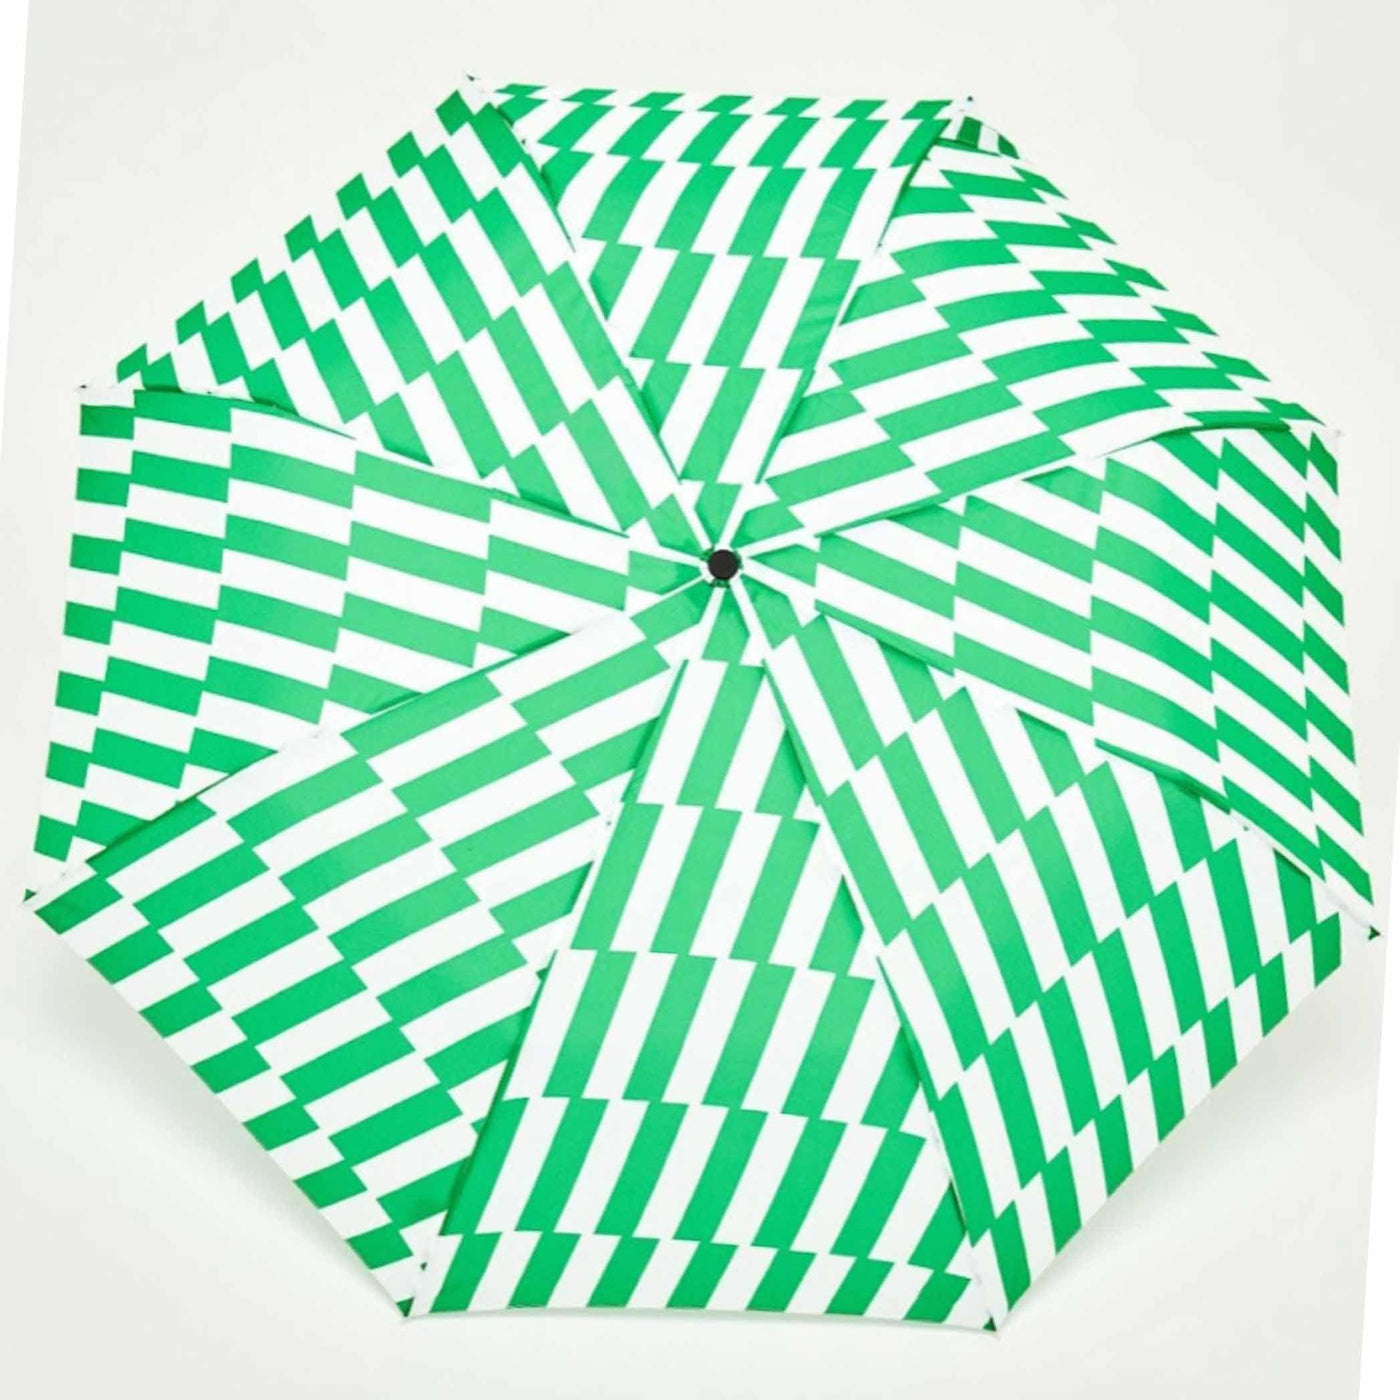 Parapluie Canard Original Duckhead : alliance de style et de durabilité. Fabriqué à partir de bouteilles recyclées, il offre une protection fiable et écologique.